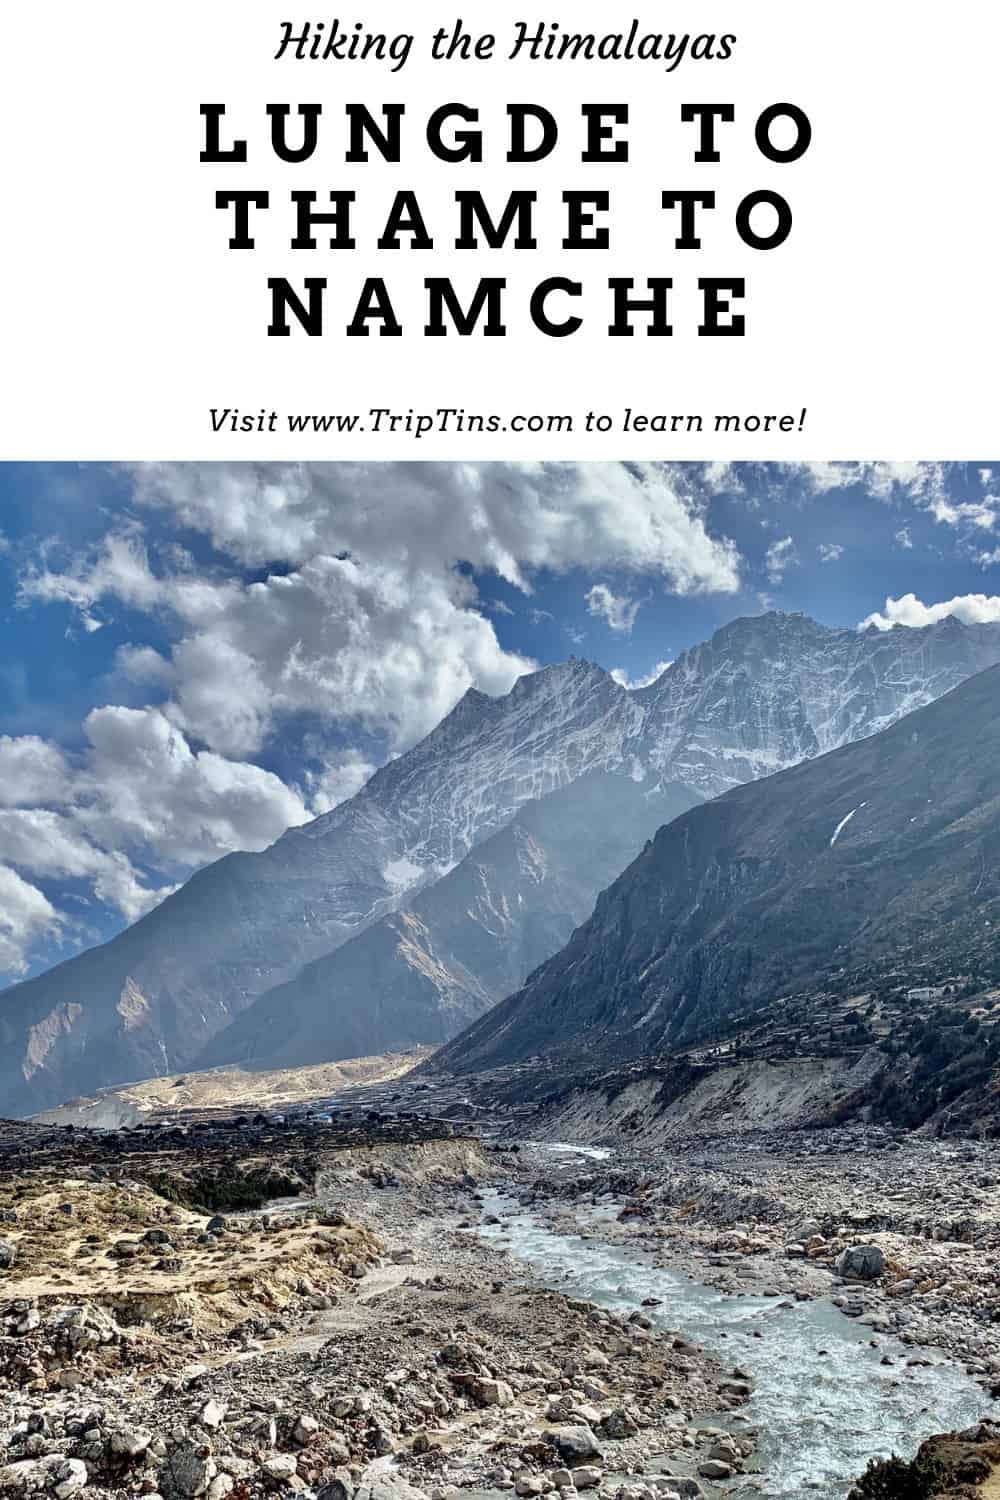 Thame Nepal Trek